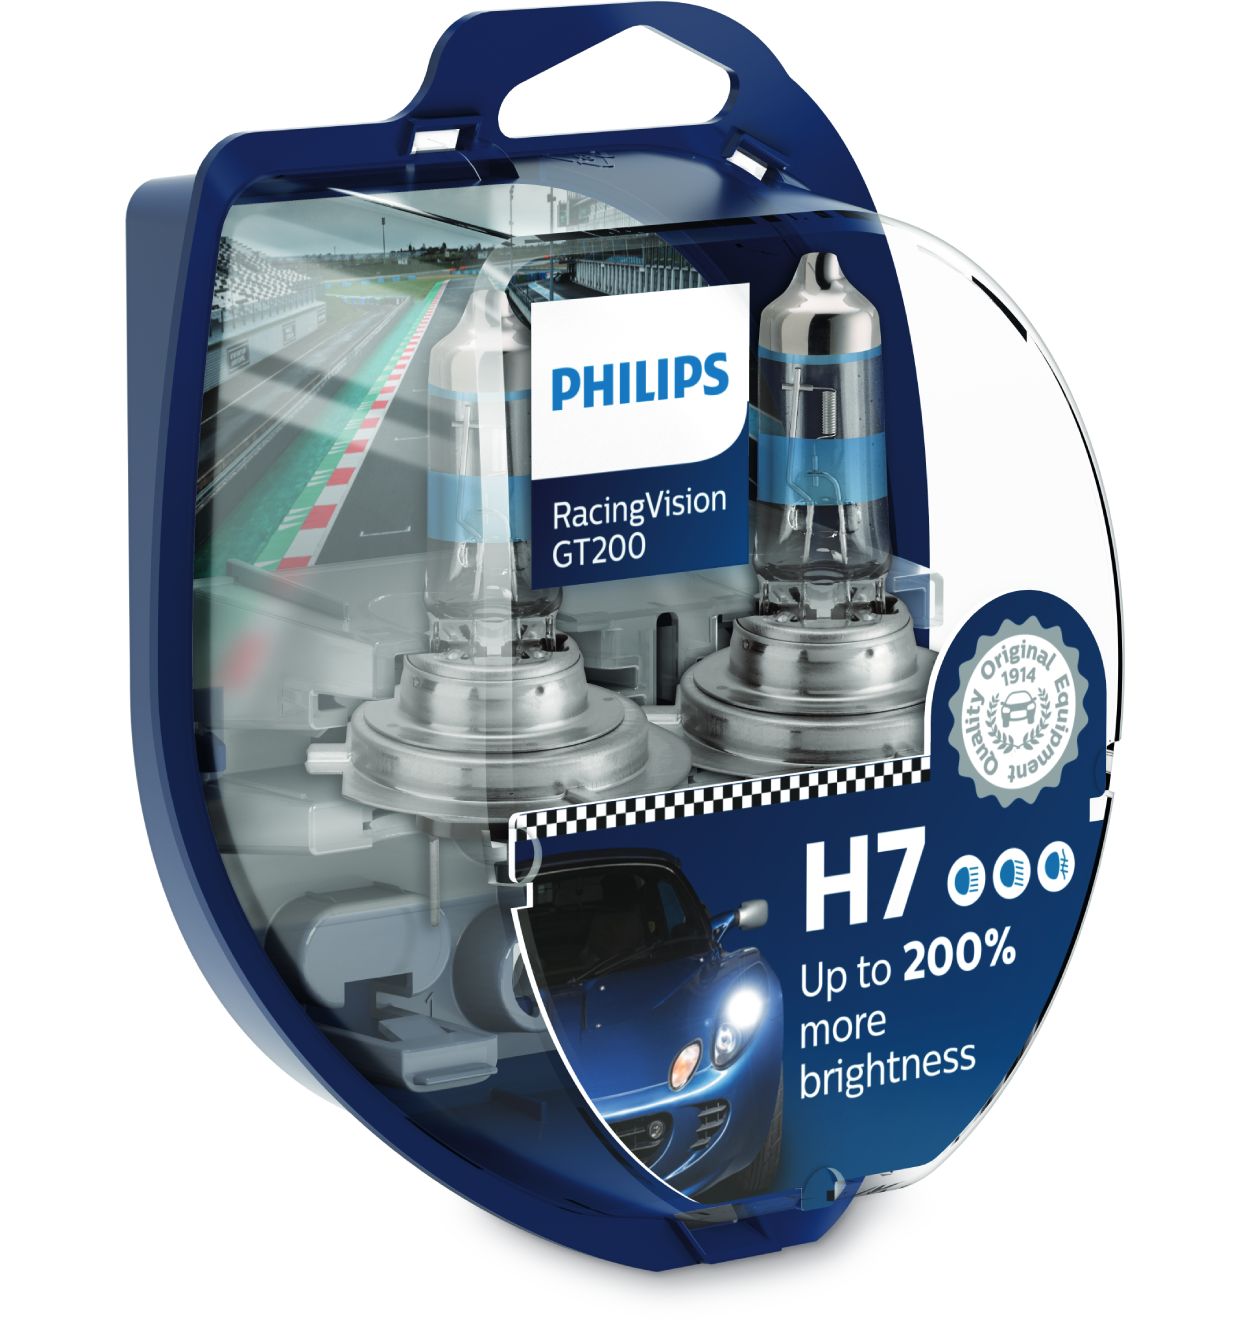 Philips RacingVision GT200, Car Headlight Bulbs